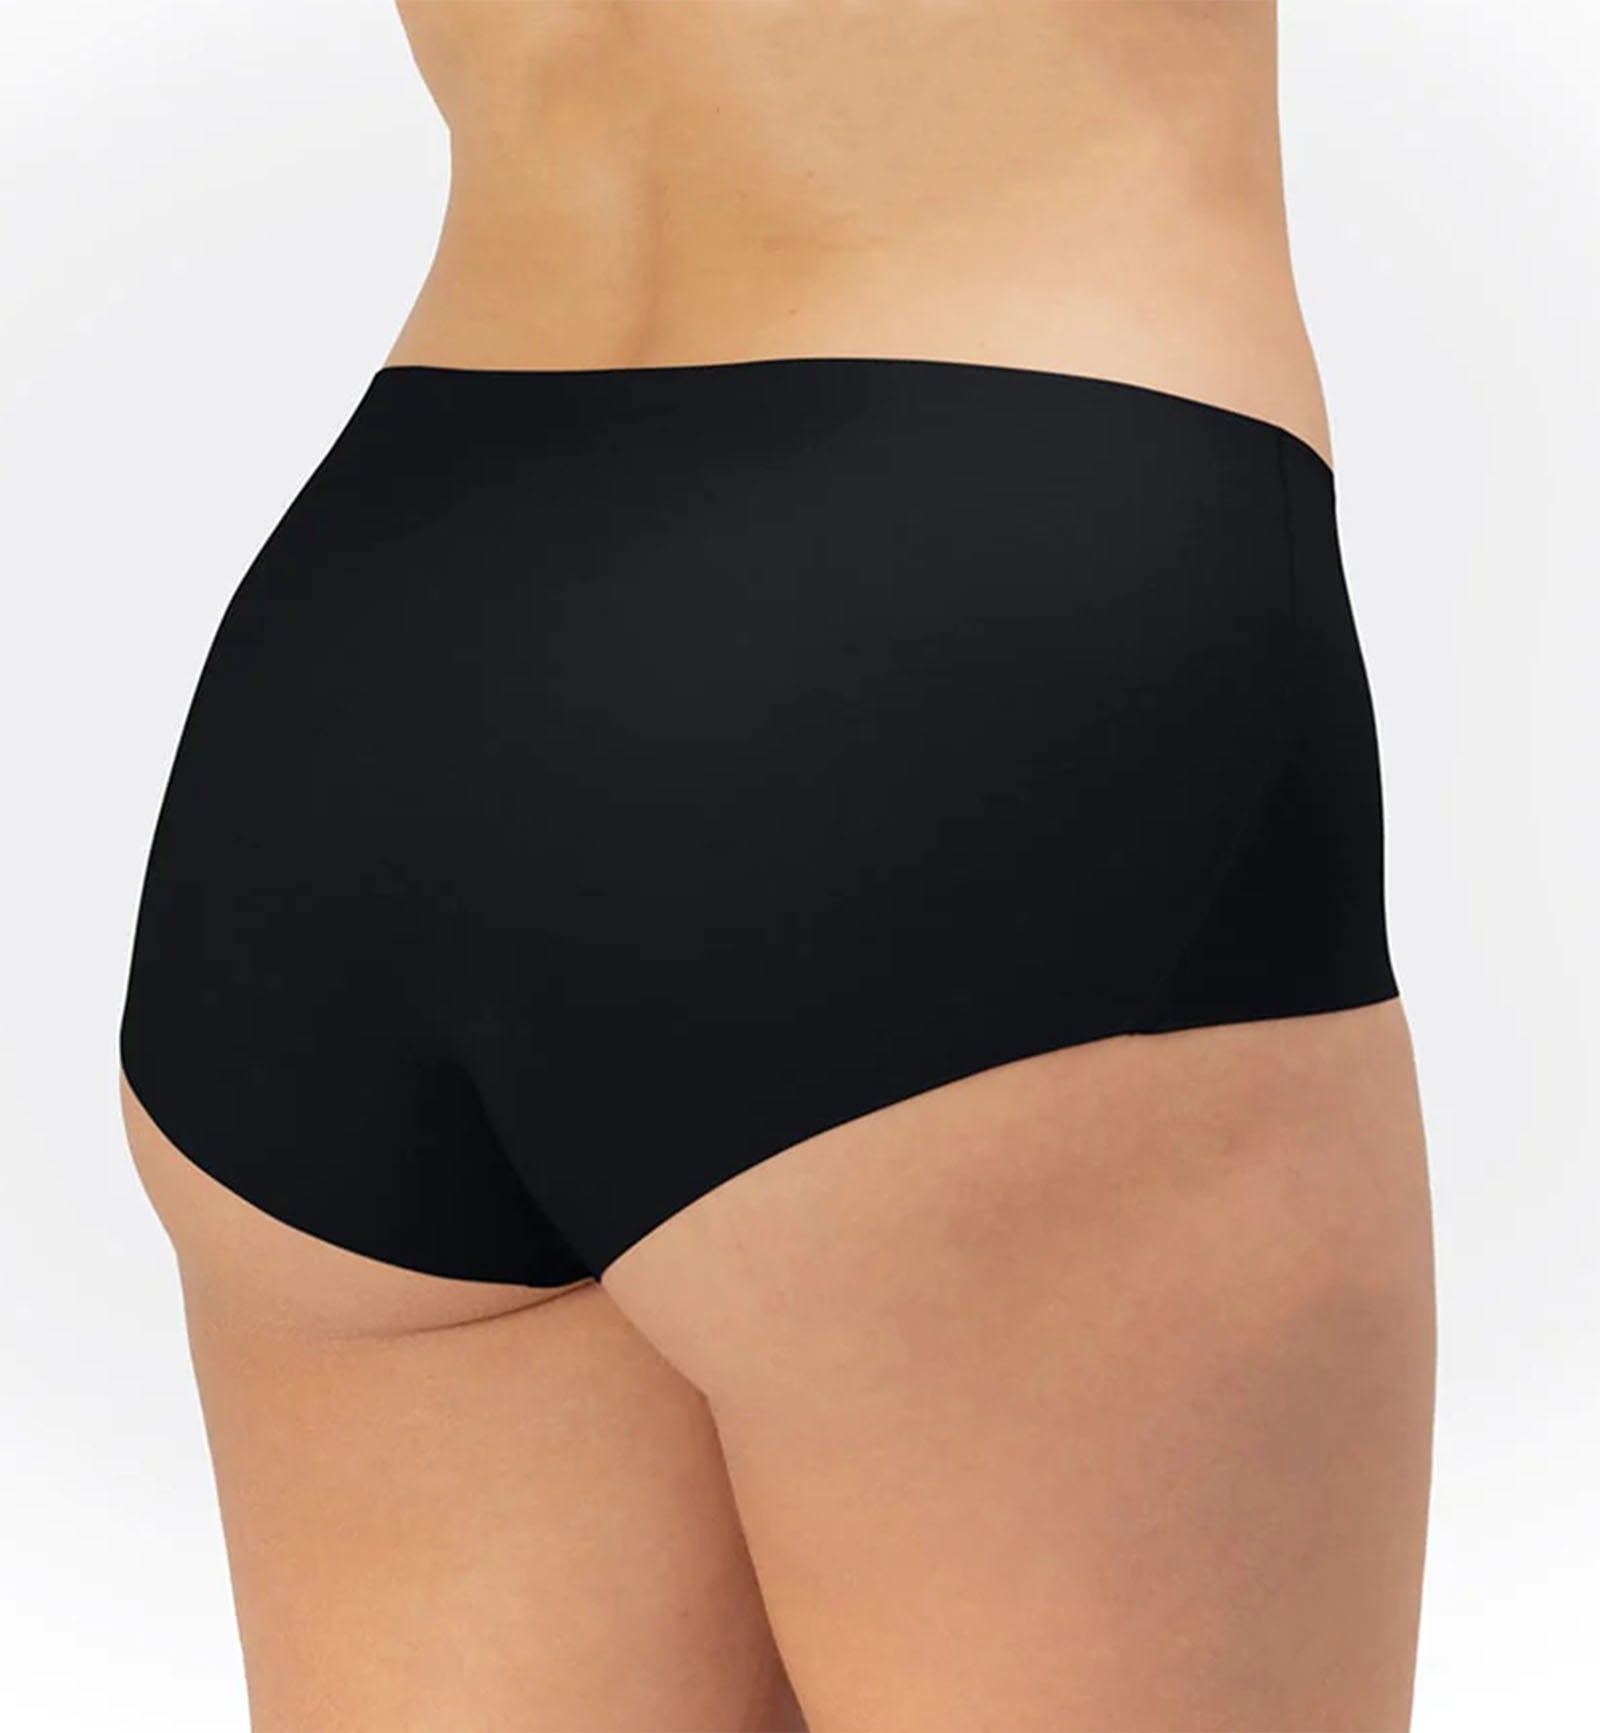 Panty Promise Mid Rise Bikini,XS,Black - Black,XS